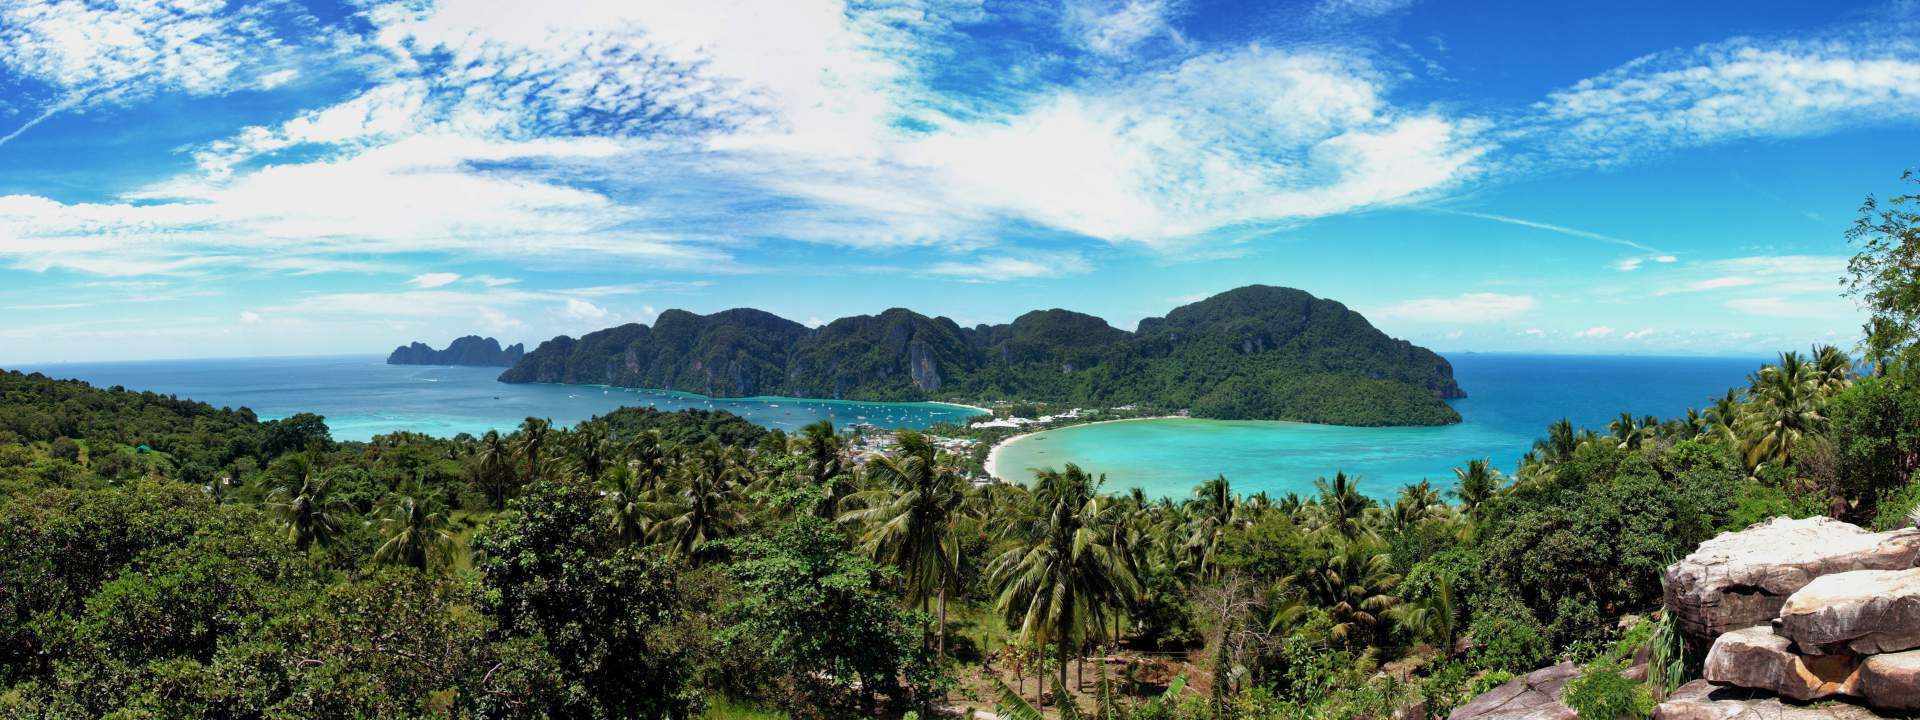 Partez à la découverte des îles du Sud de la Thaïlande